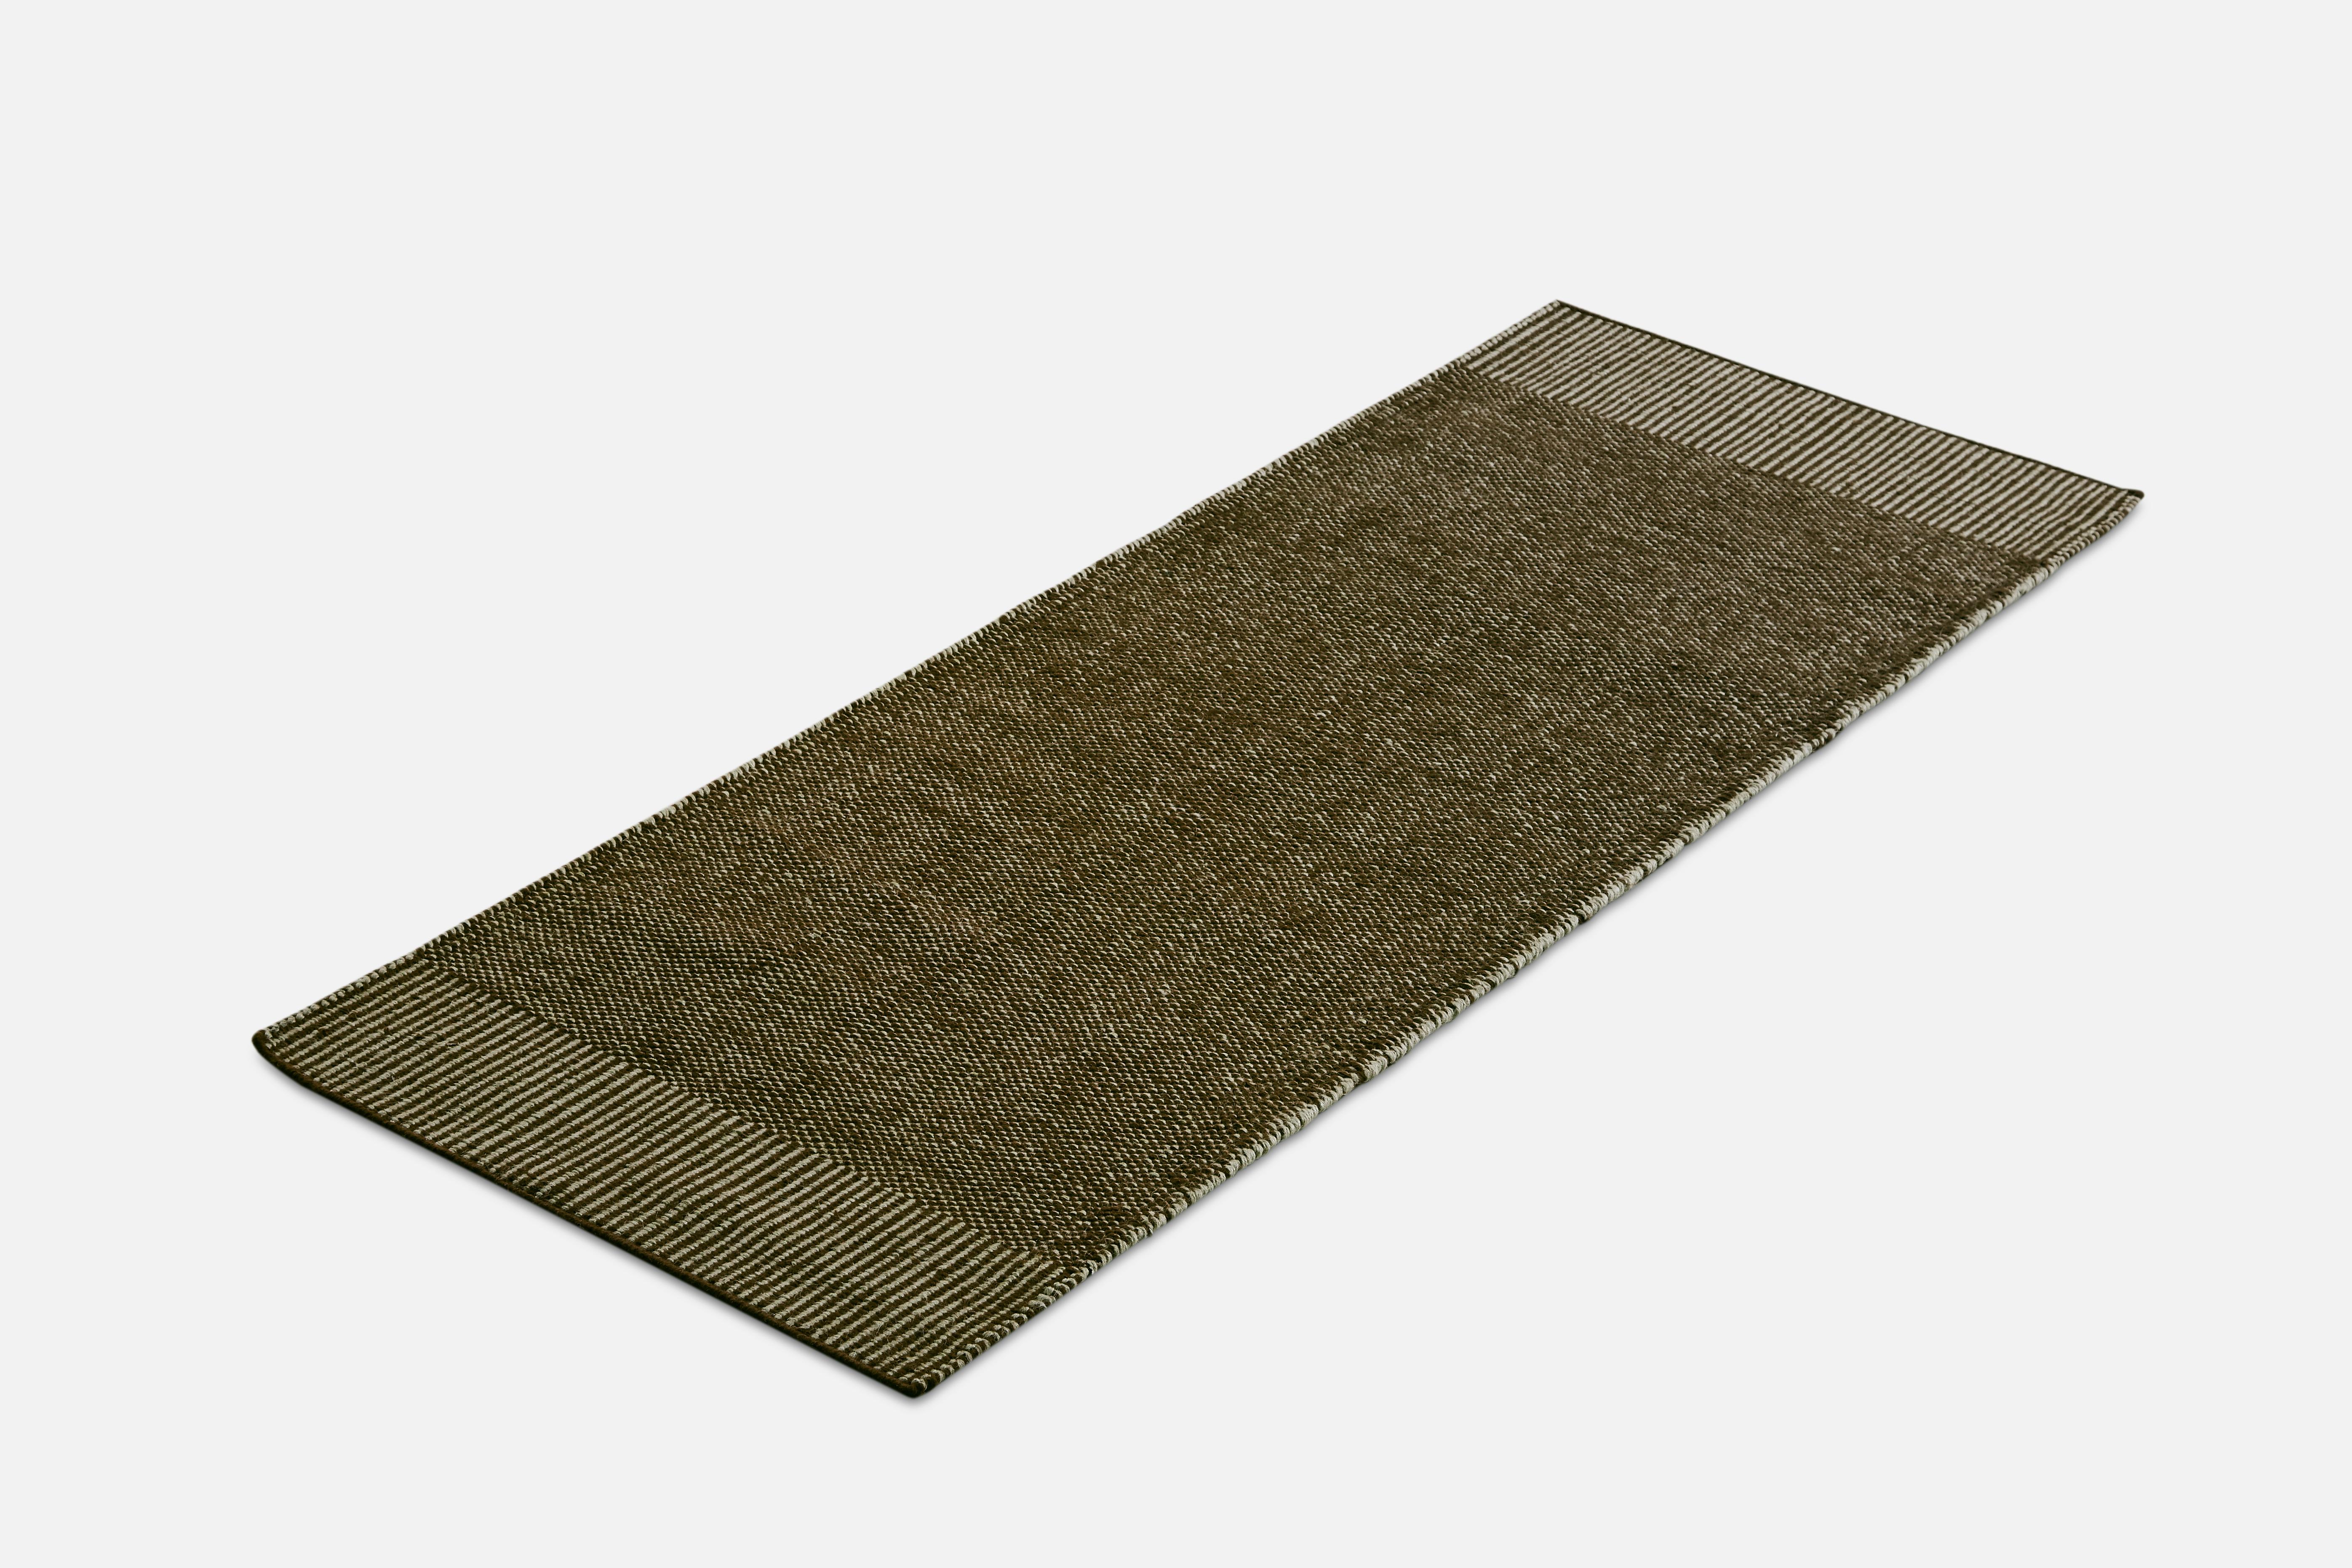 Grüner Rombo-Teppich von Studio MLR
MATERIALIEN: 65% Wolle, 35% Jute.
Abmessungen: B 75 x L 200 cm
Erhältlich in 3 Größen: B 90 x L 140, B 170 x L 240, B 75 x L 200 cm.
Erhältlich in Grau, Moosgrün und Rost.

Rombo zeichnet sich durch die